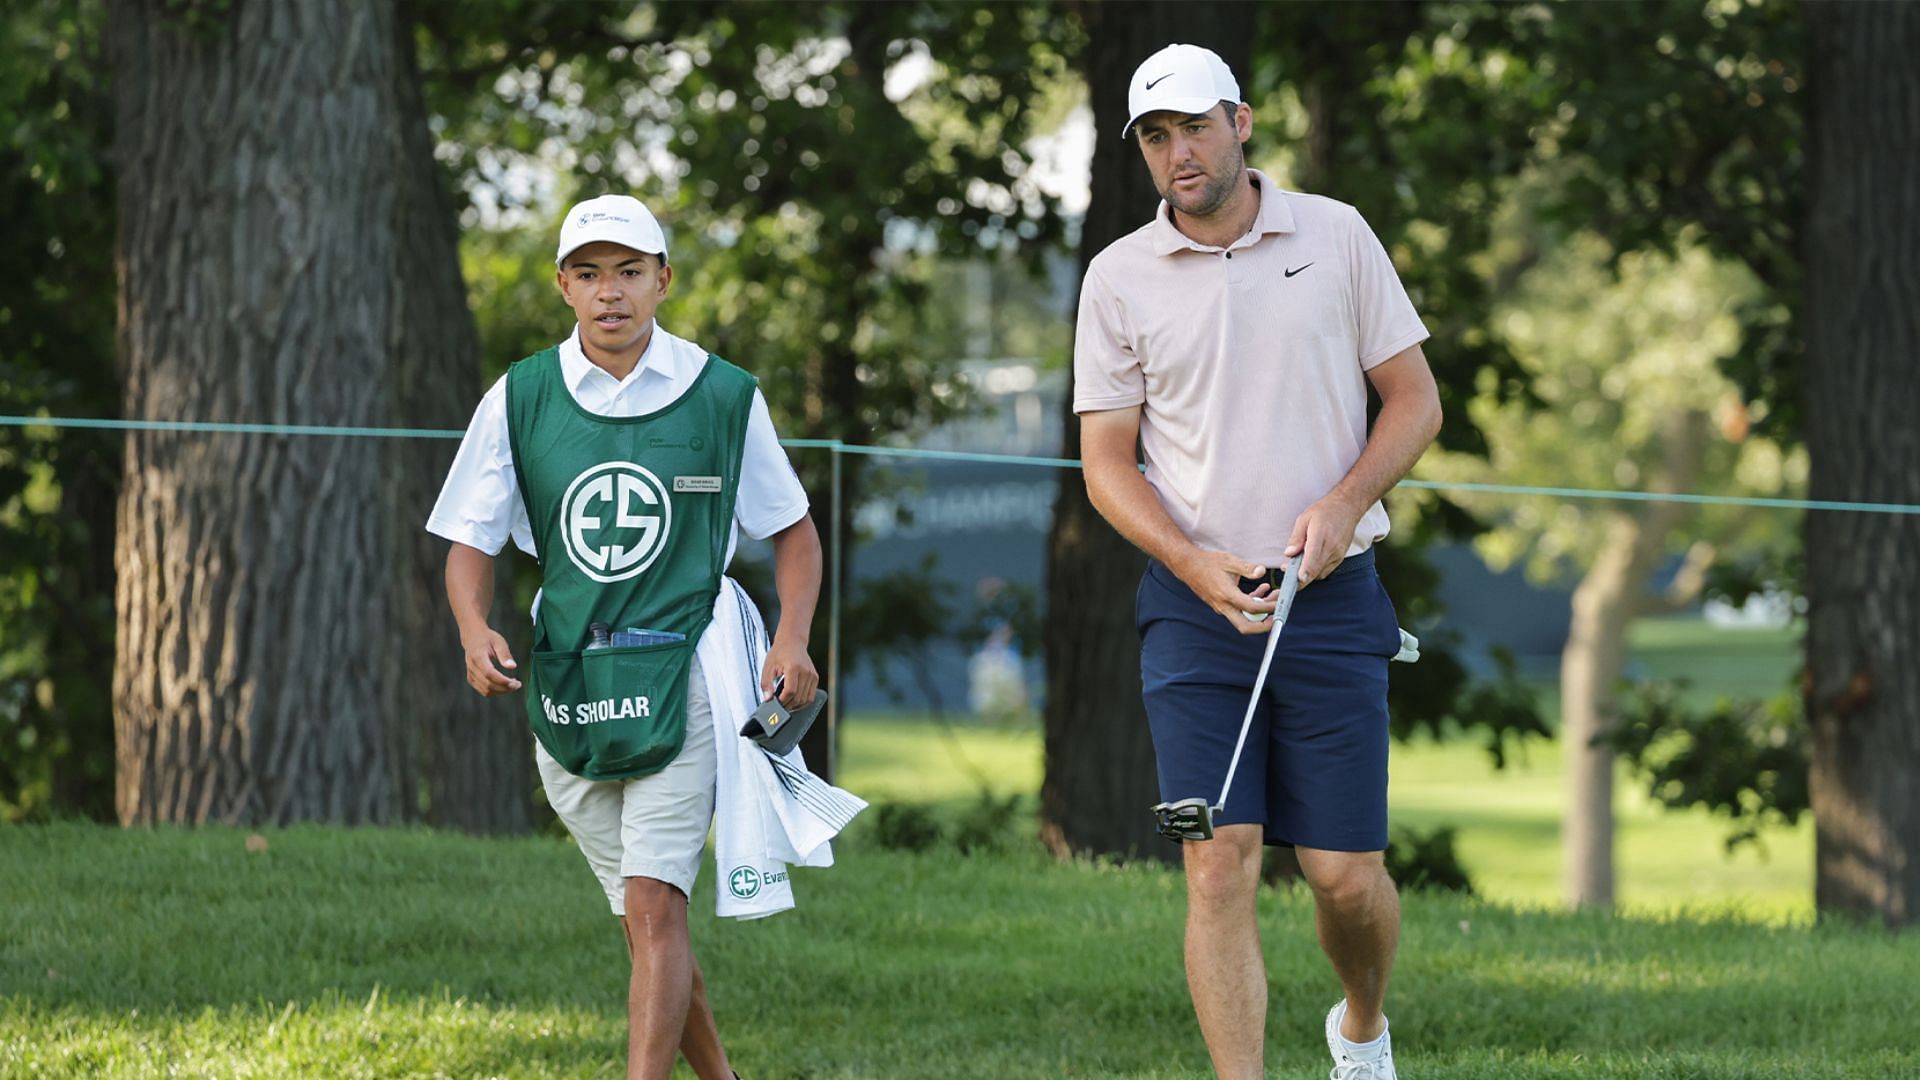 Diego Origel and Scottie Scheffler (Image via PGA Tour)